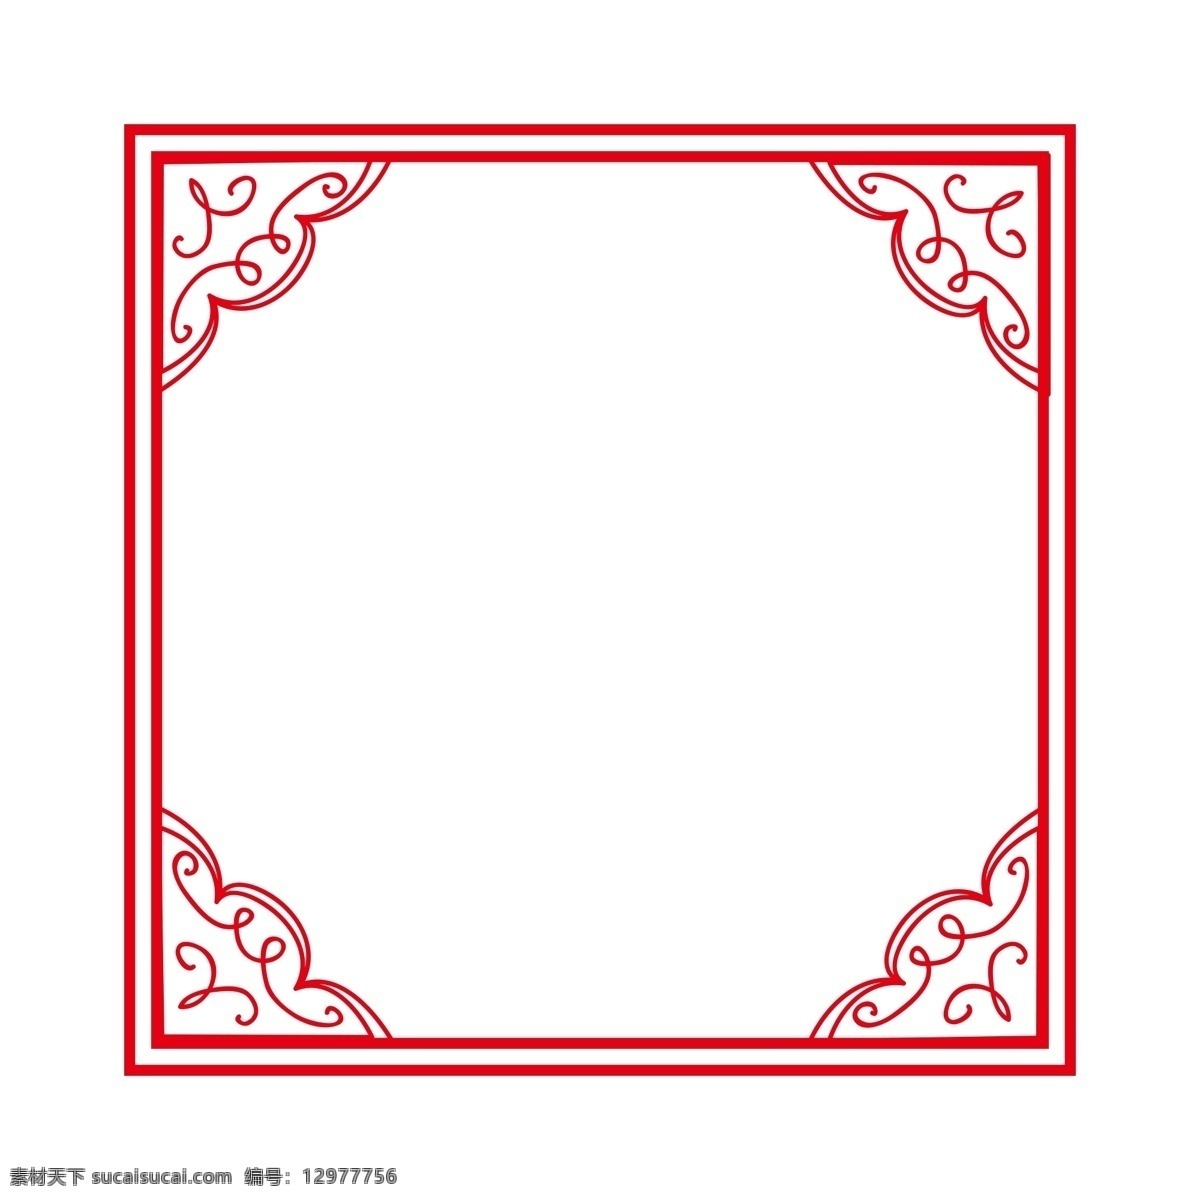 简约 矩形 花边 中国 风 红色 纹理 边框 中国风 纹理边框